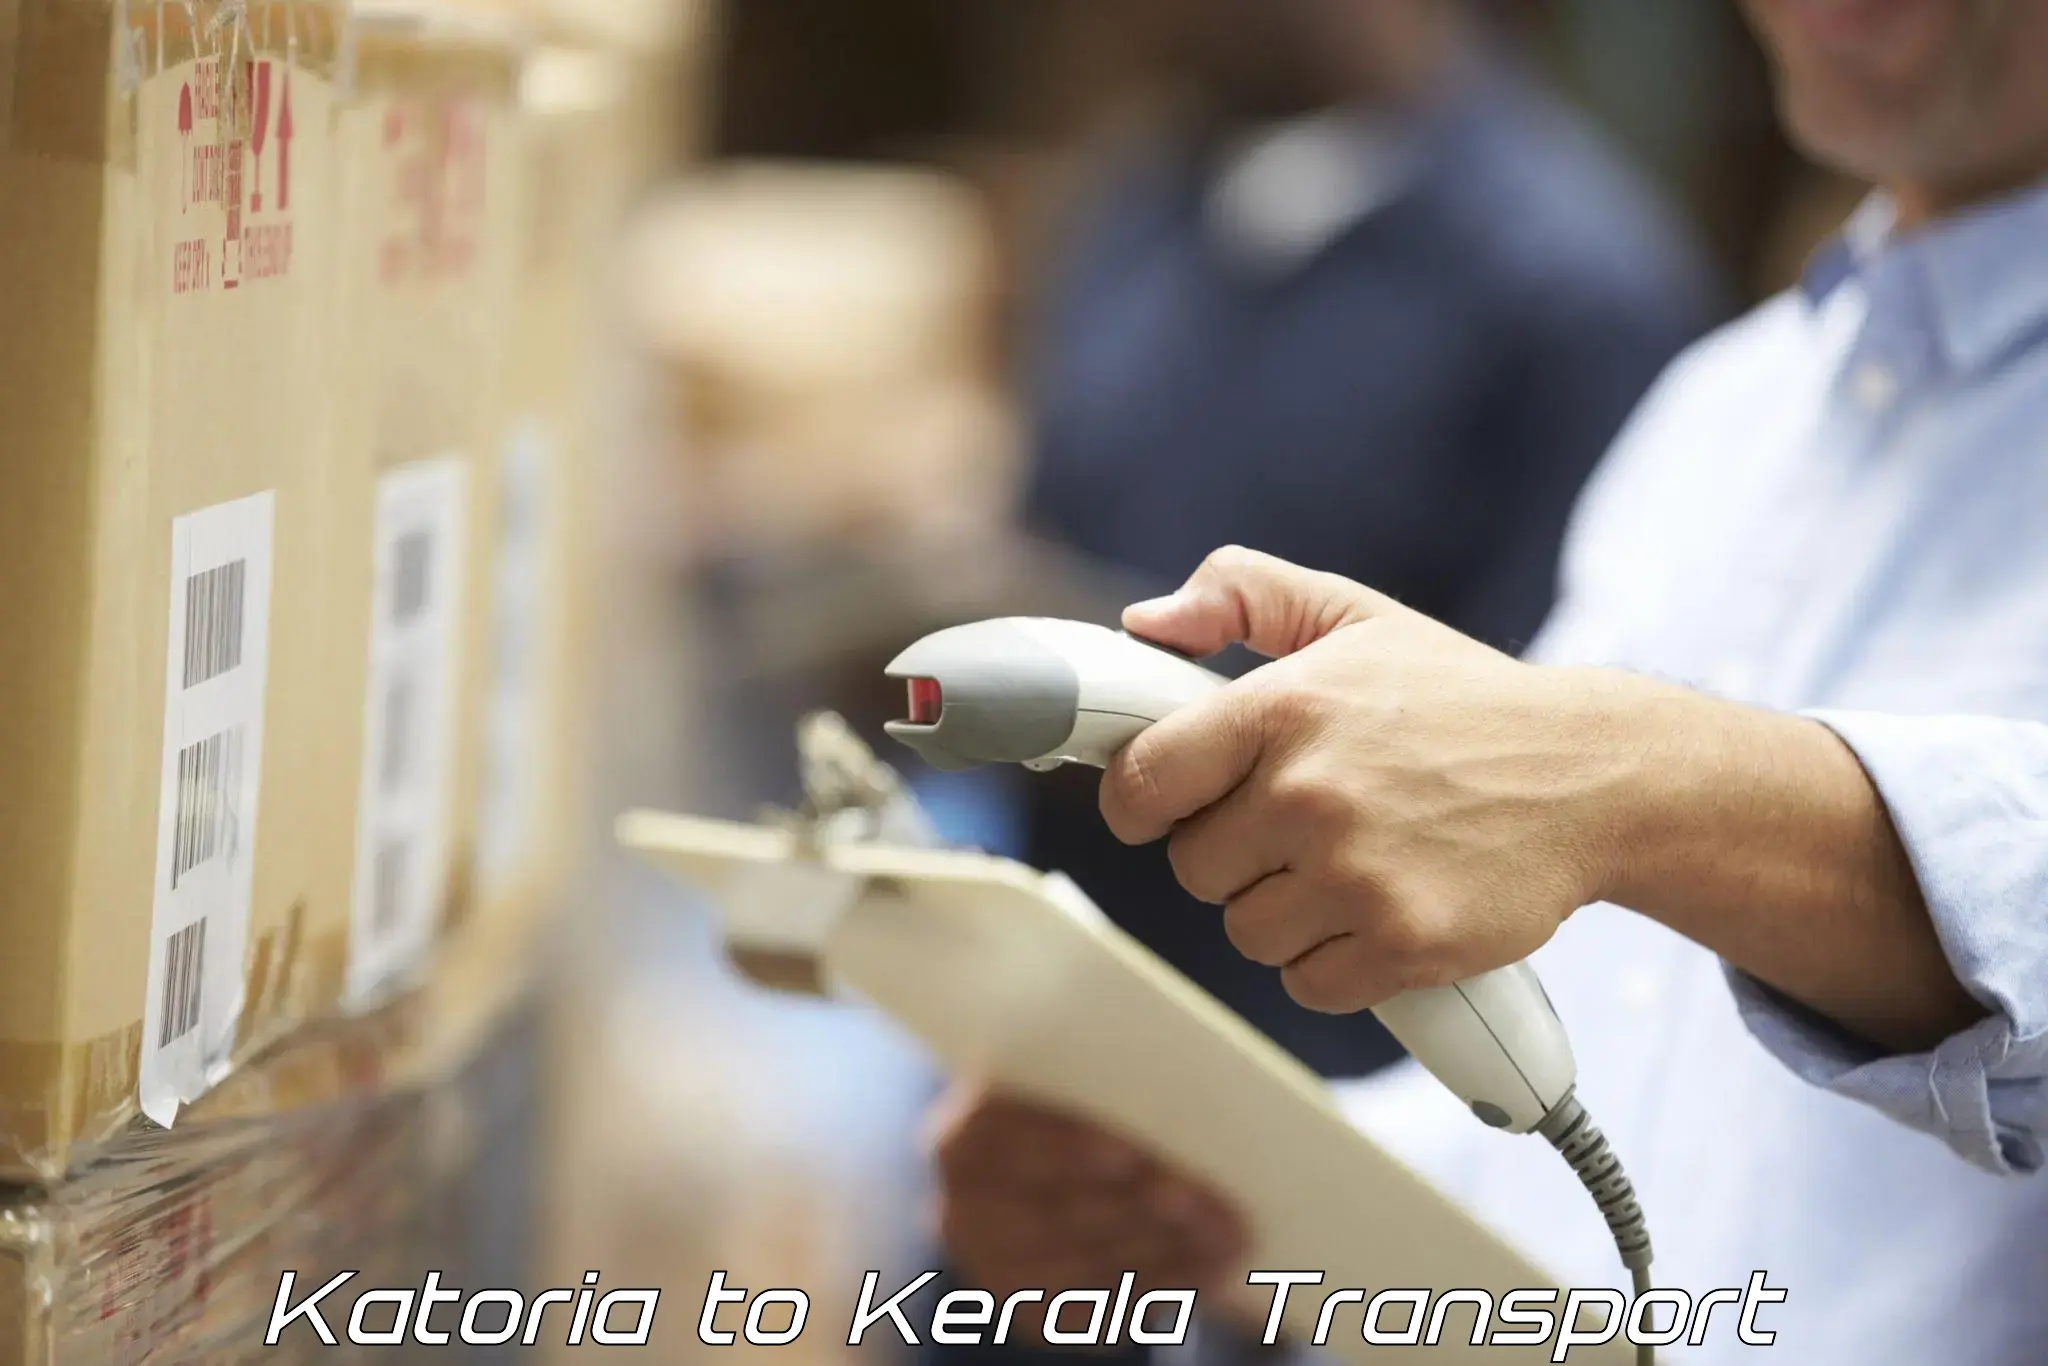 Transportation services Katoria to Kozhikode